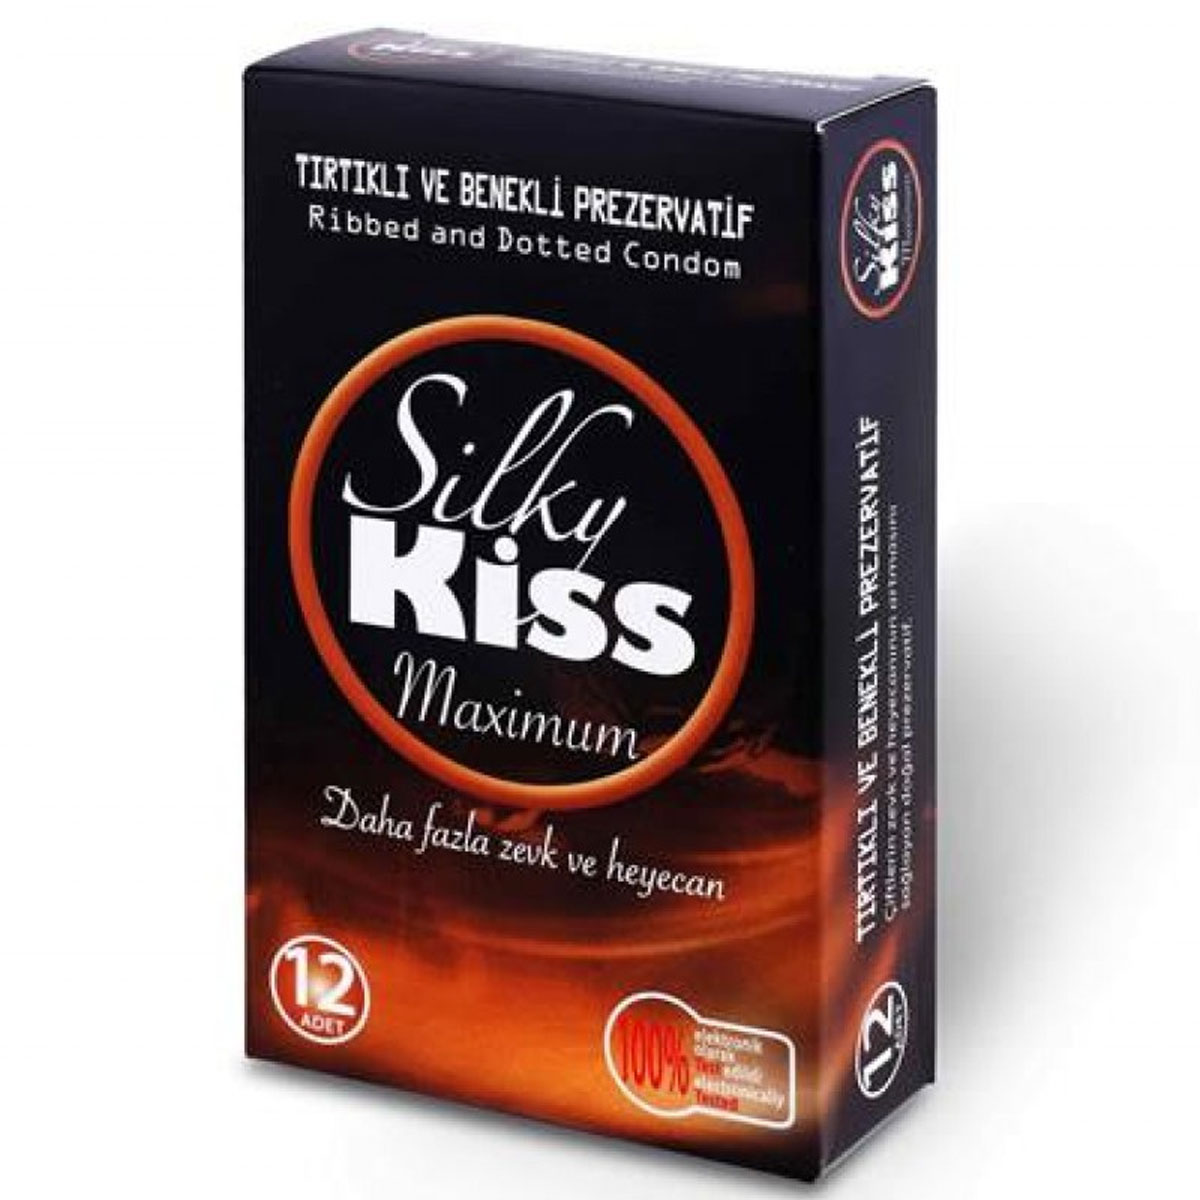 Silky Kiss Tırtıklı ve Benekli Prezervatif C-1573